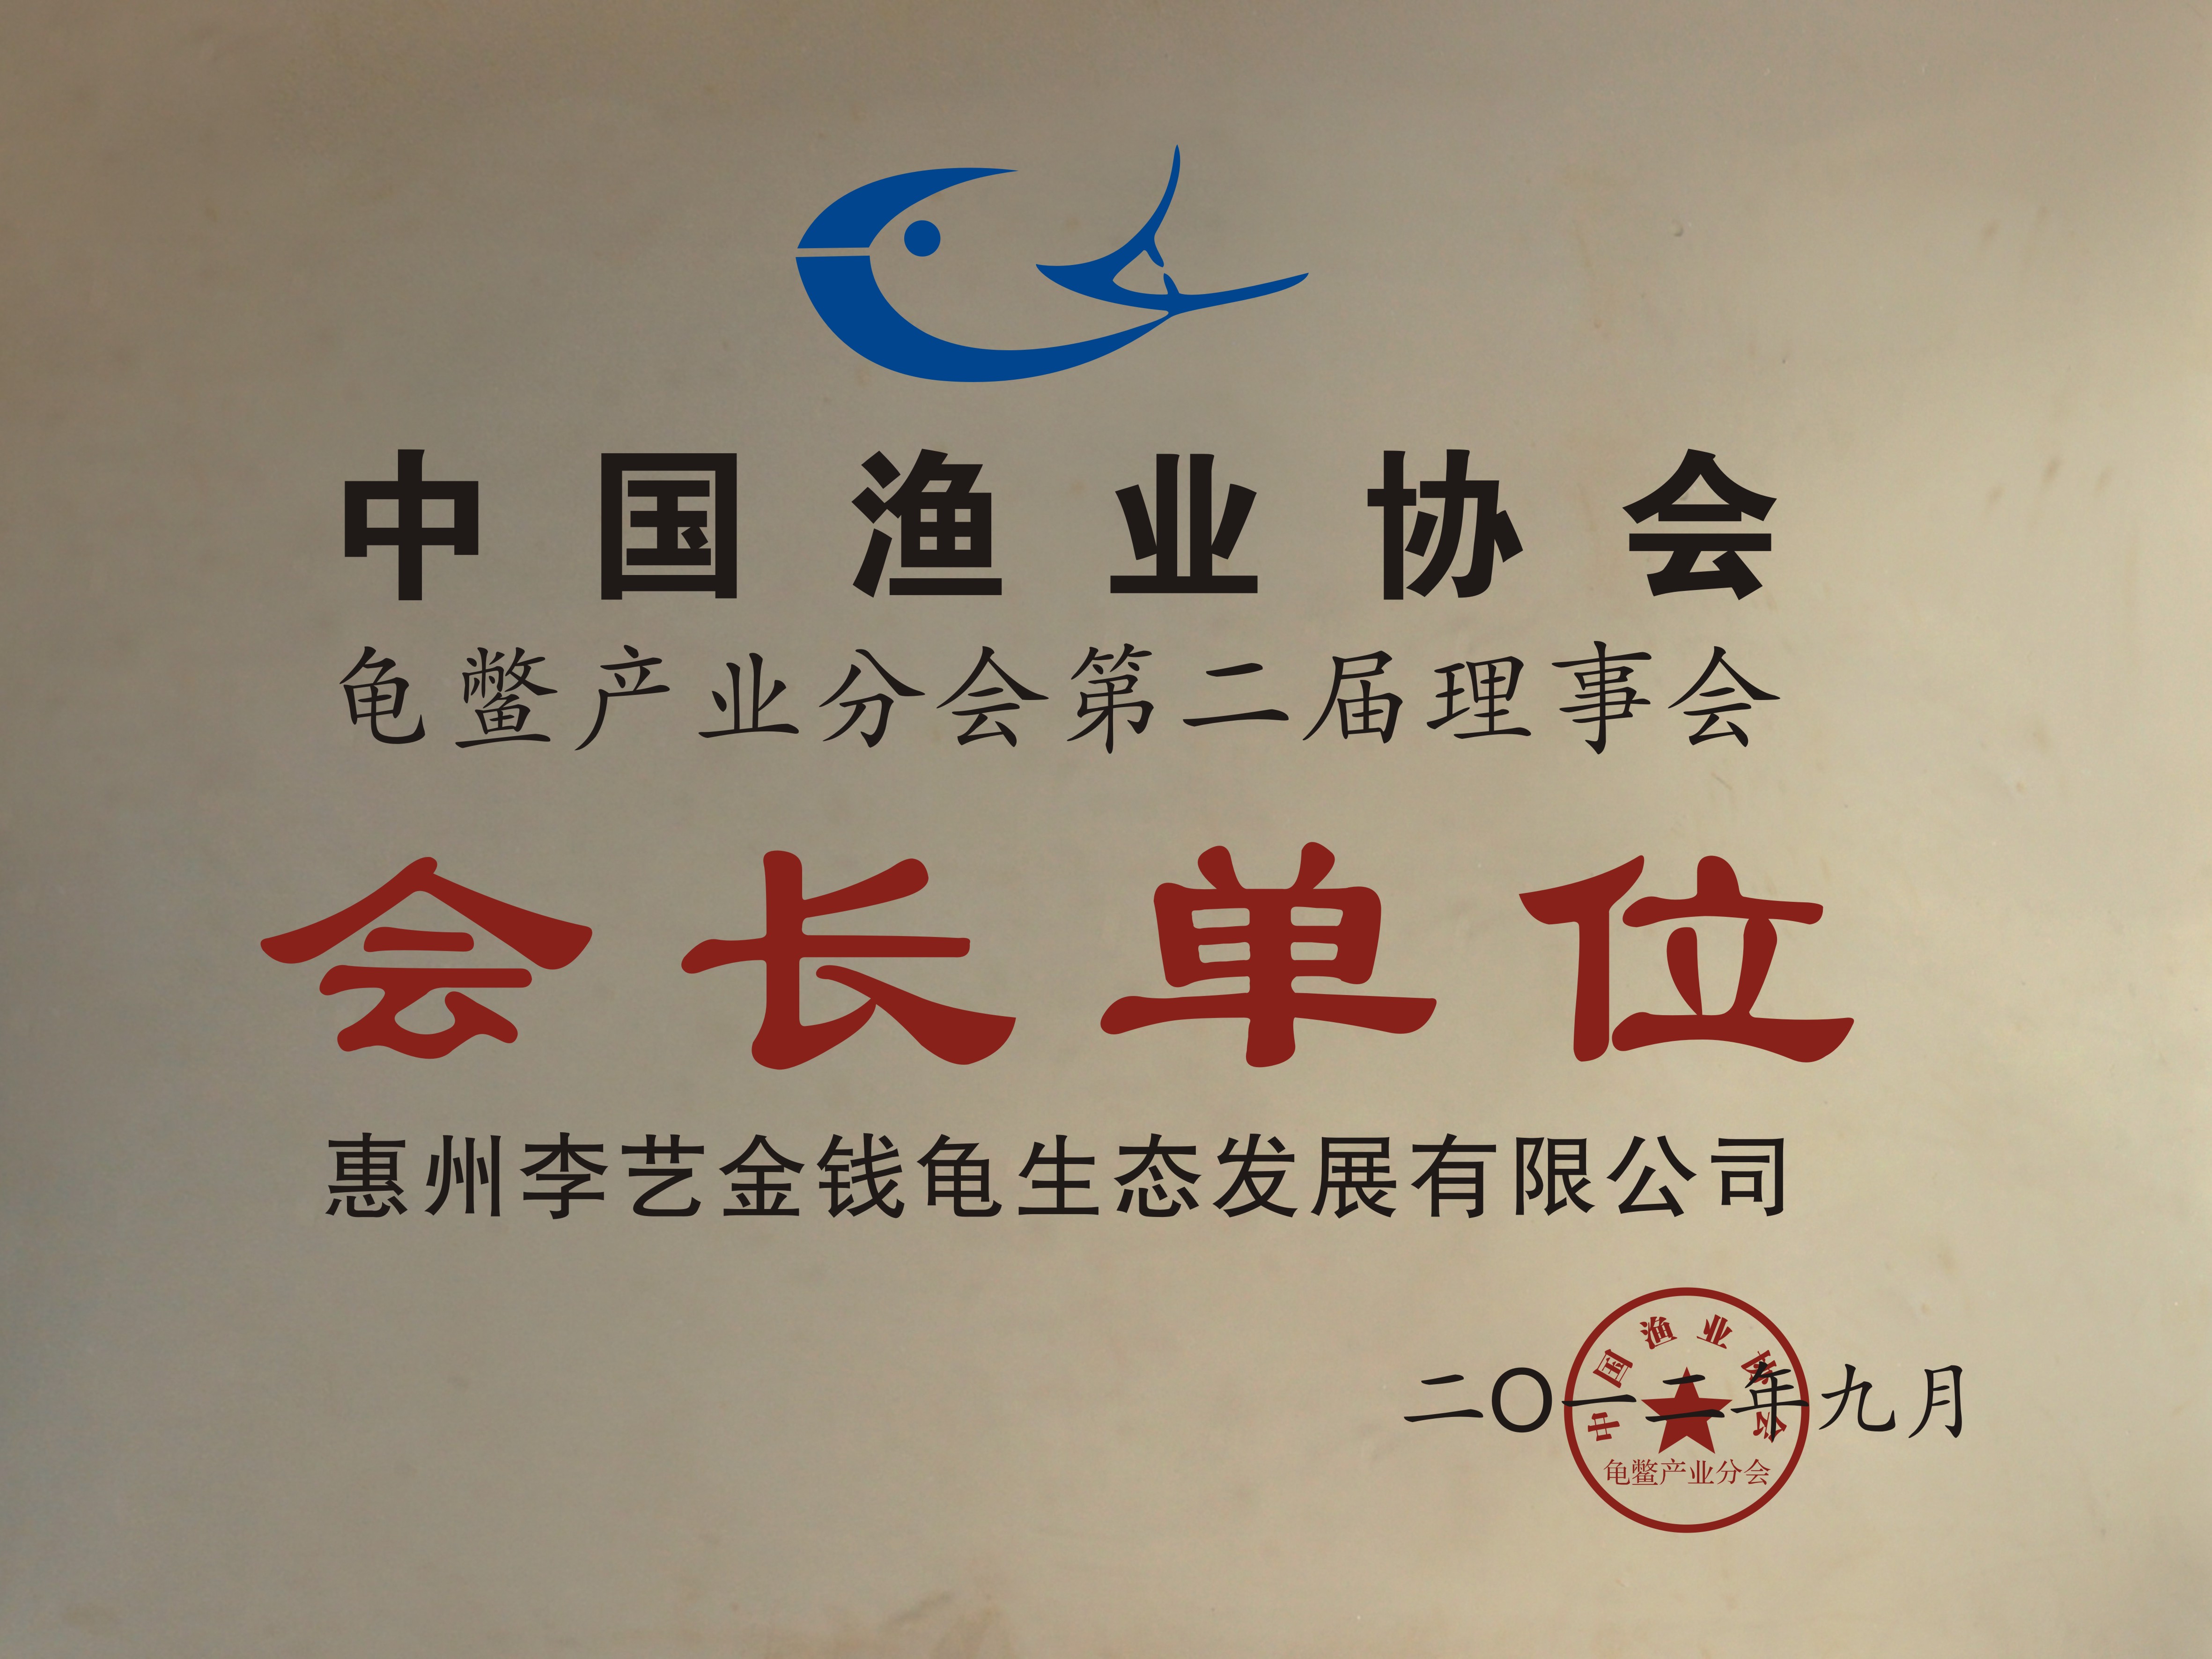 中国渔业协会龟鳖产业分会第二届理事会会长单位